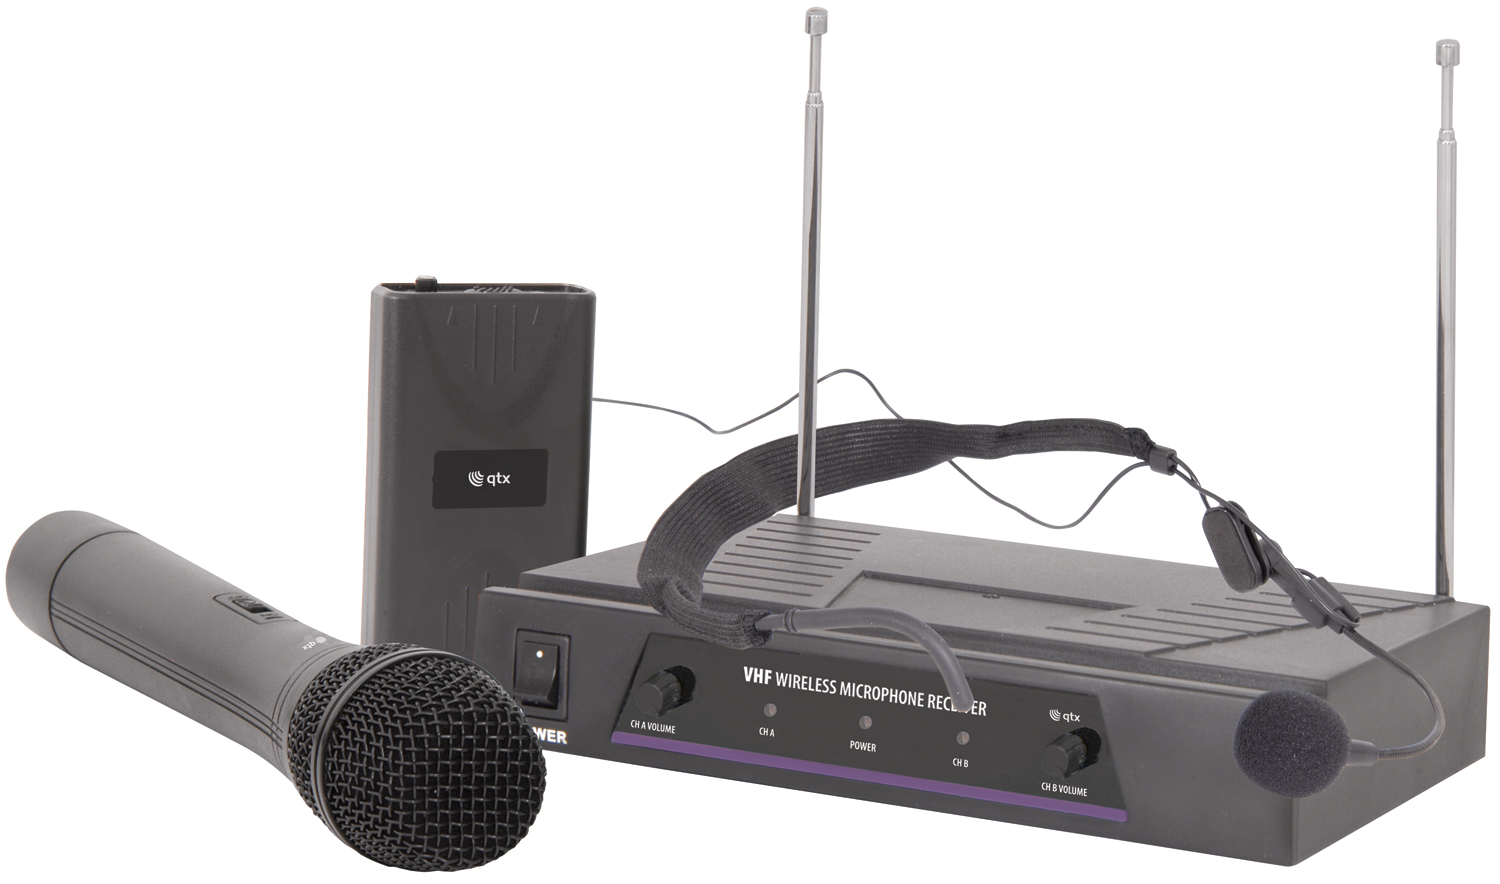 Handheld & Neckband VHF Wireless System VHF handheld + neckband wireless system 174.1 + 175.0MHz